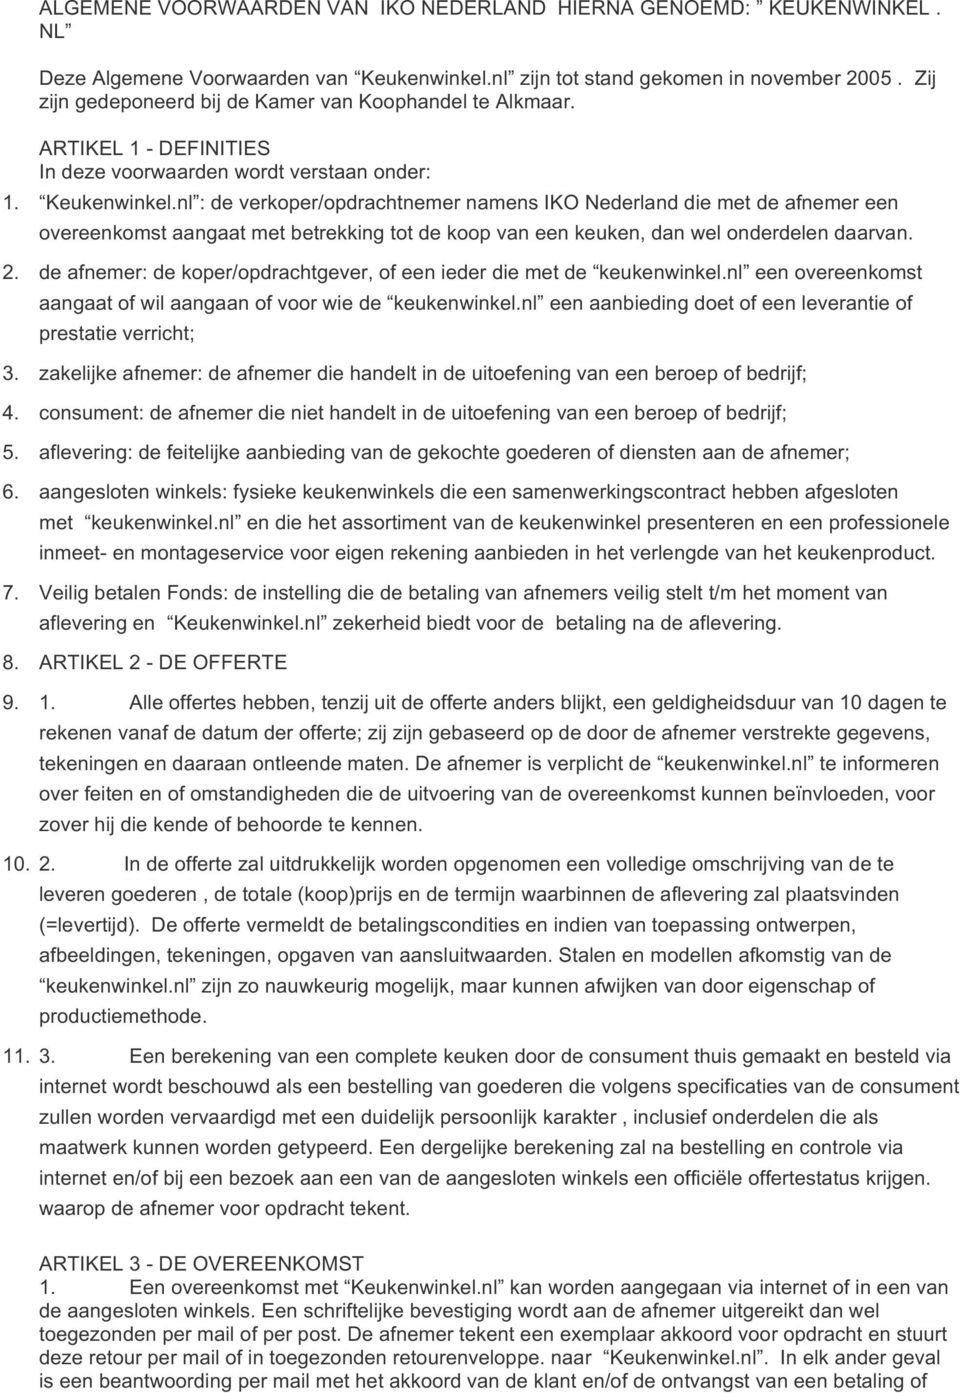 nl :'de'verkoper/opdrachtnemer'namens'iko'nederland'die'met'de'afnemer'een' overeenkomst'aangaat'met'betrekking'tot'de'koop'van'een'keuken,'dan'wel'onderdelen'daarvan.' 2.